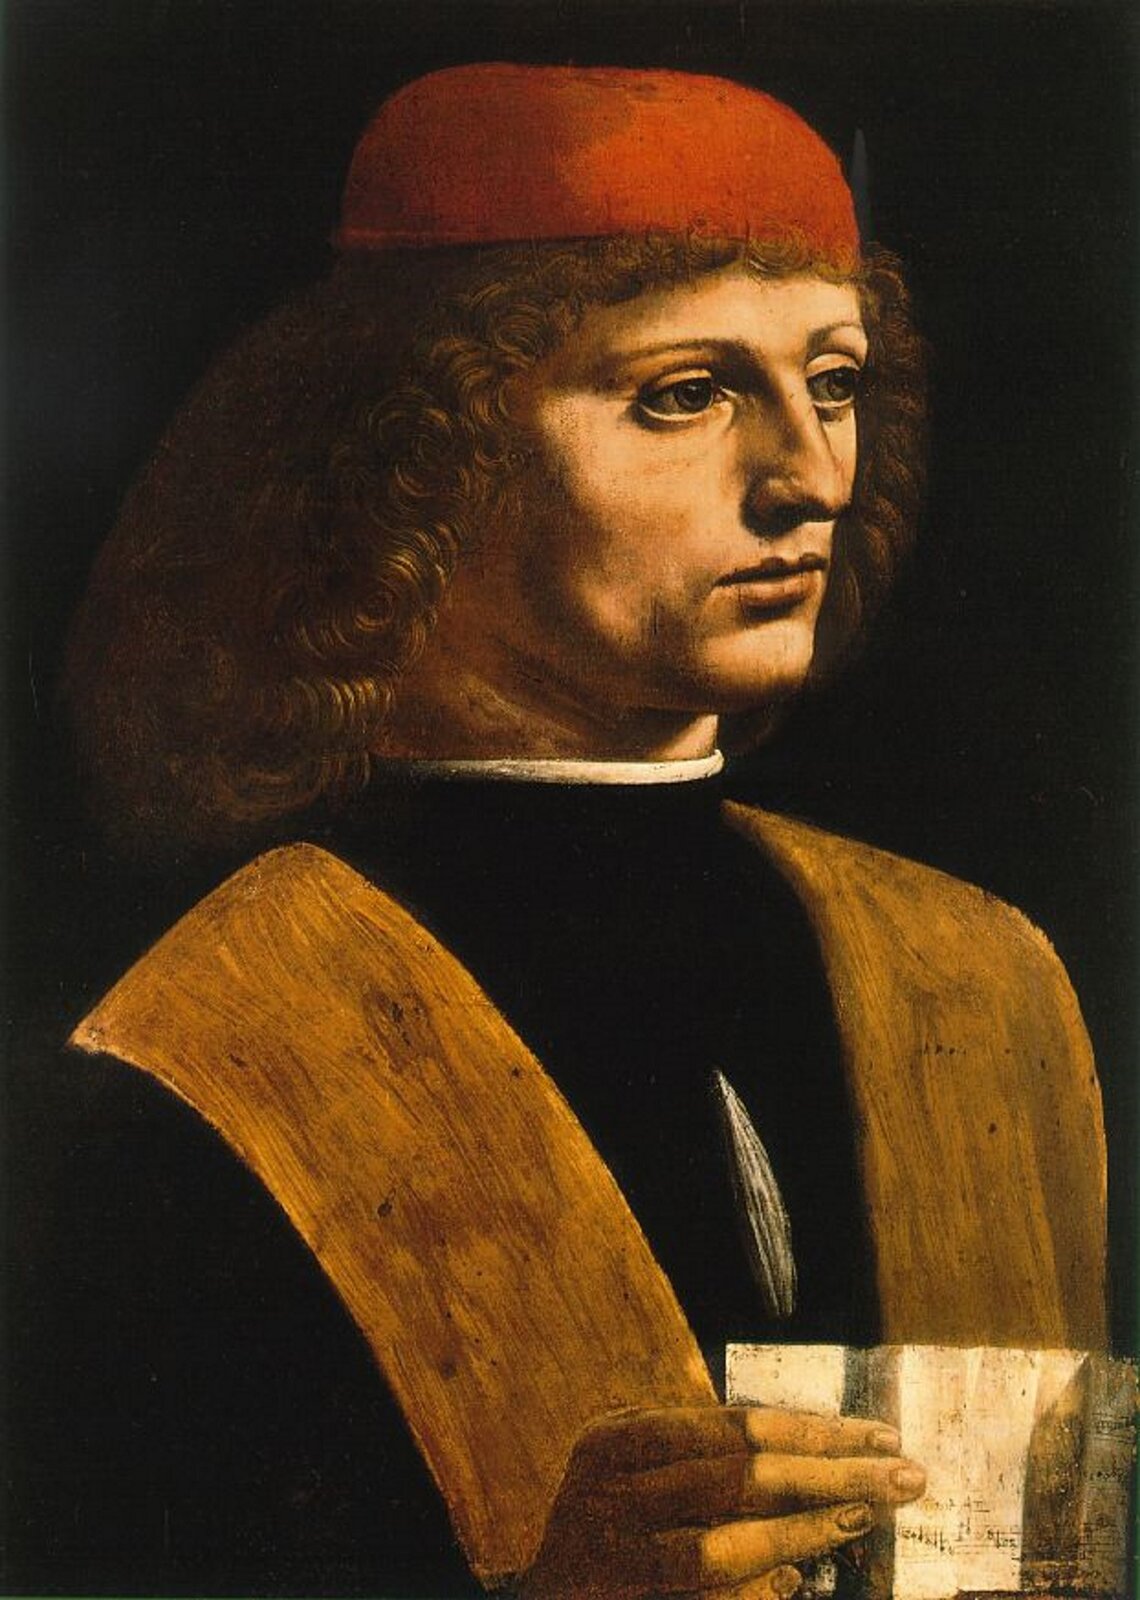 Ilustracja przedstawia obraz Leonardo da Vinci pt. „Portret muzyka”. Na obrazie znajduje się mężczyzna z włosami do ramion. Na głowie ma czerwony beret. W ręku trzyma fragment papieru.